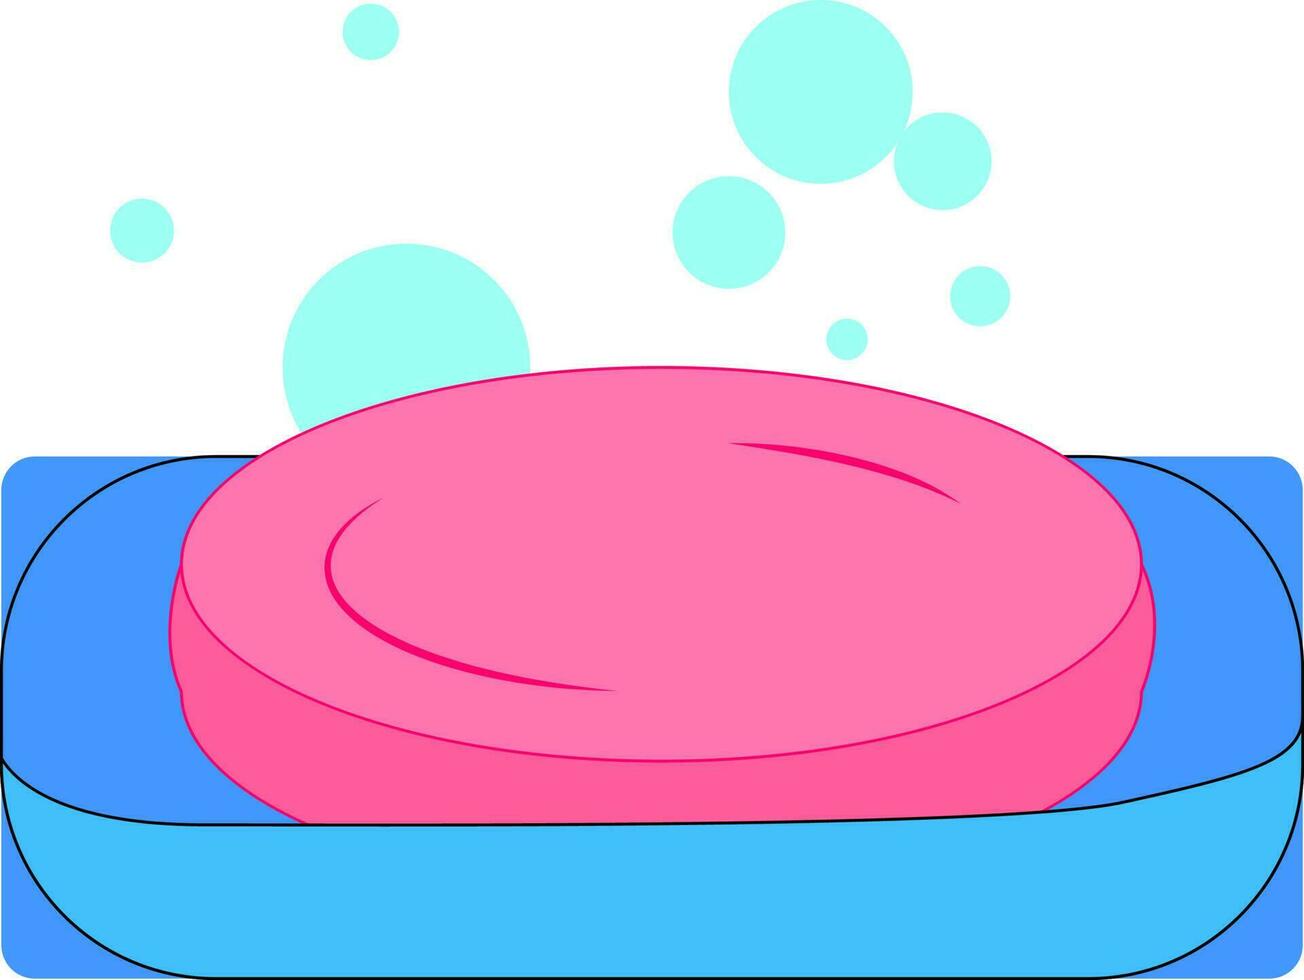 Jabón rosa, ilustración, vector sobre fondo blanco.